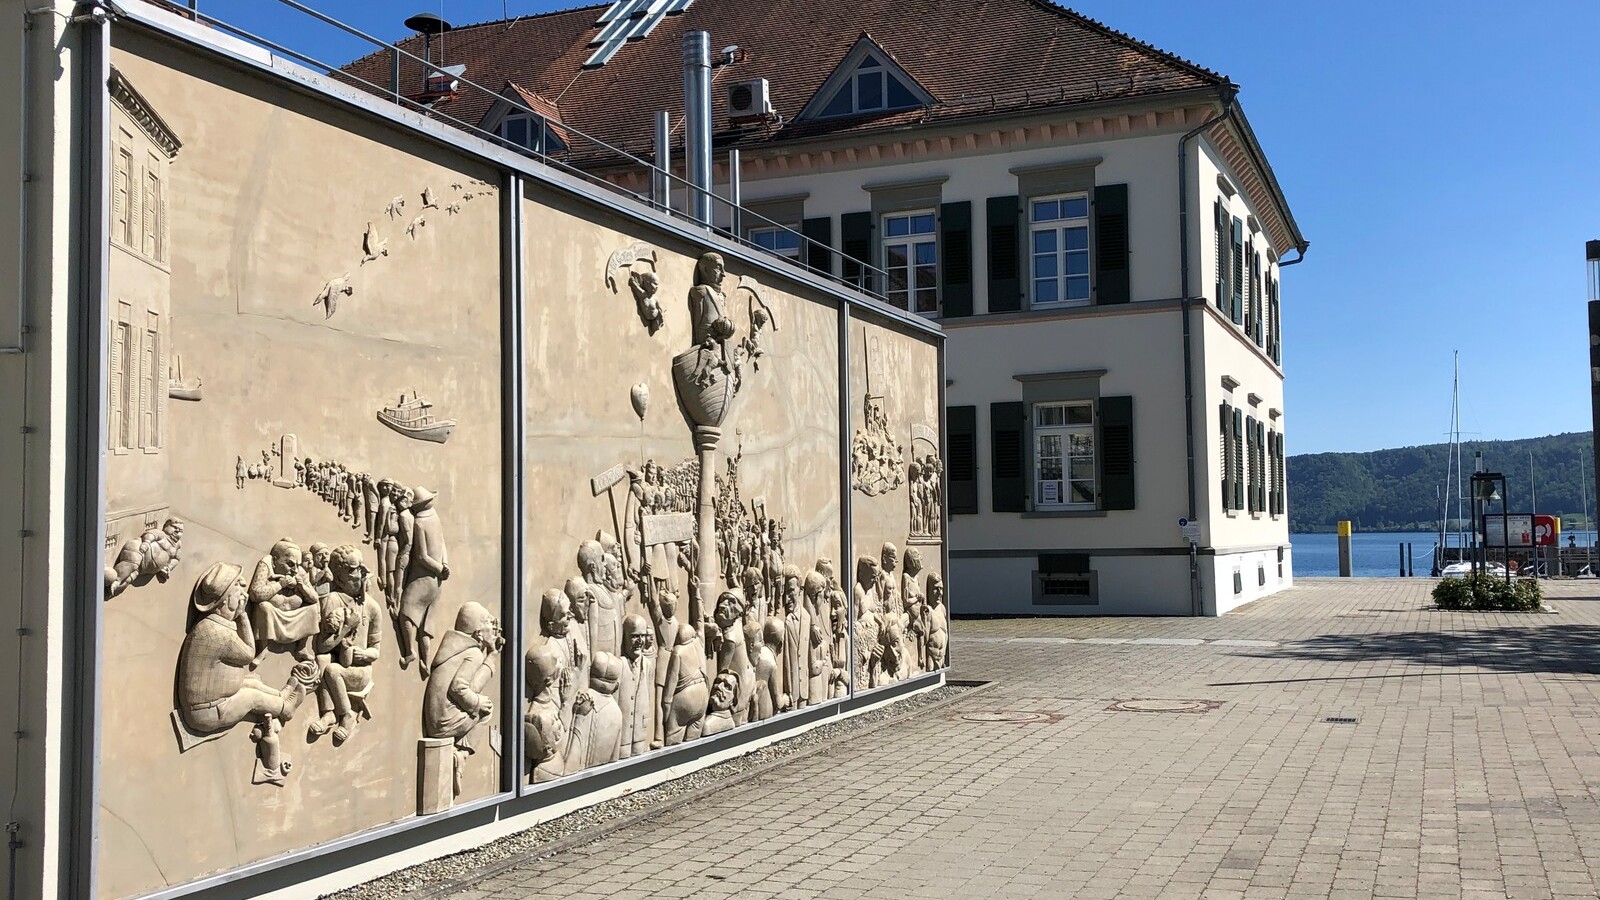 Das Kunstwerk „Ludwigs Erbe“ von Peter Lenk wurde im Herbst 2008 an der Fassade des Zollhauses in Ludwigshafen angebracht. Das Triptychon misst eine Länge von 10 m und eine Höhe von 3,70 m. 